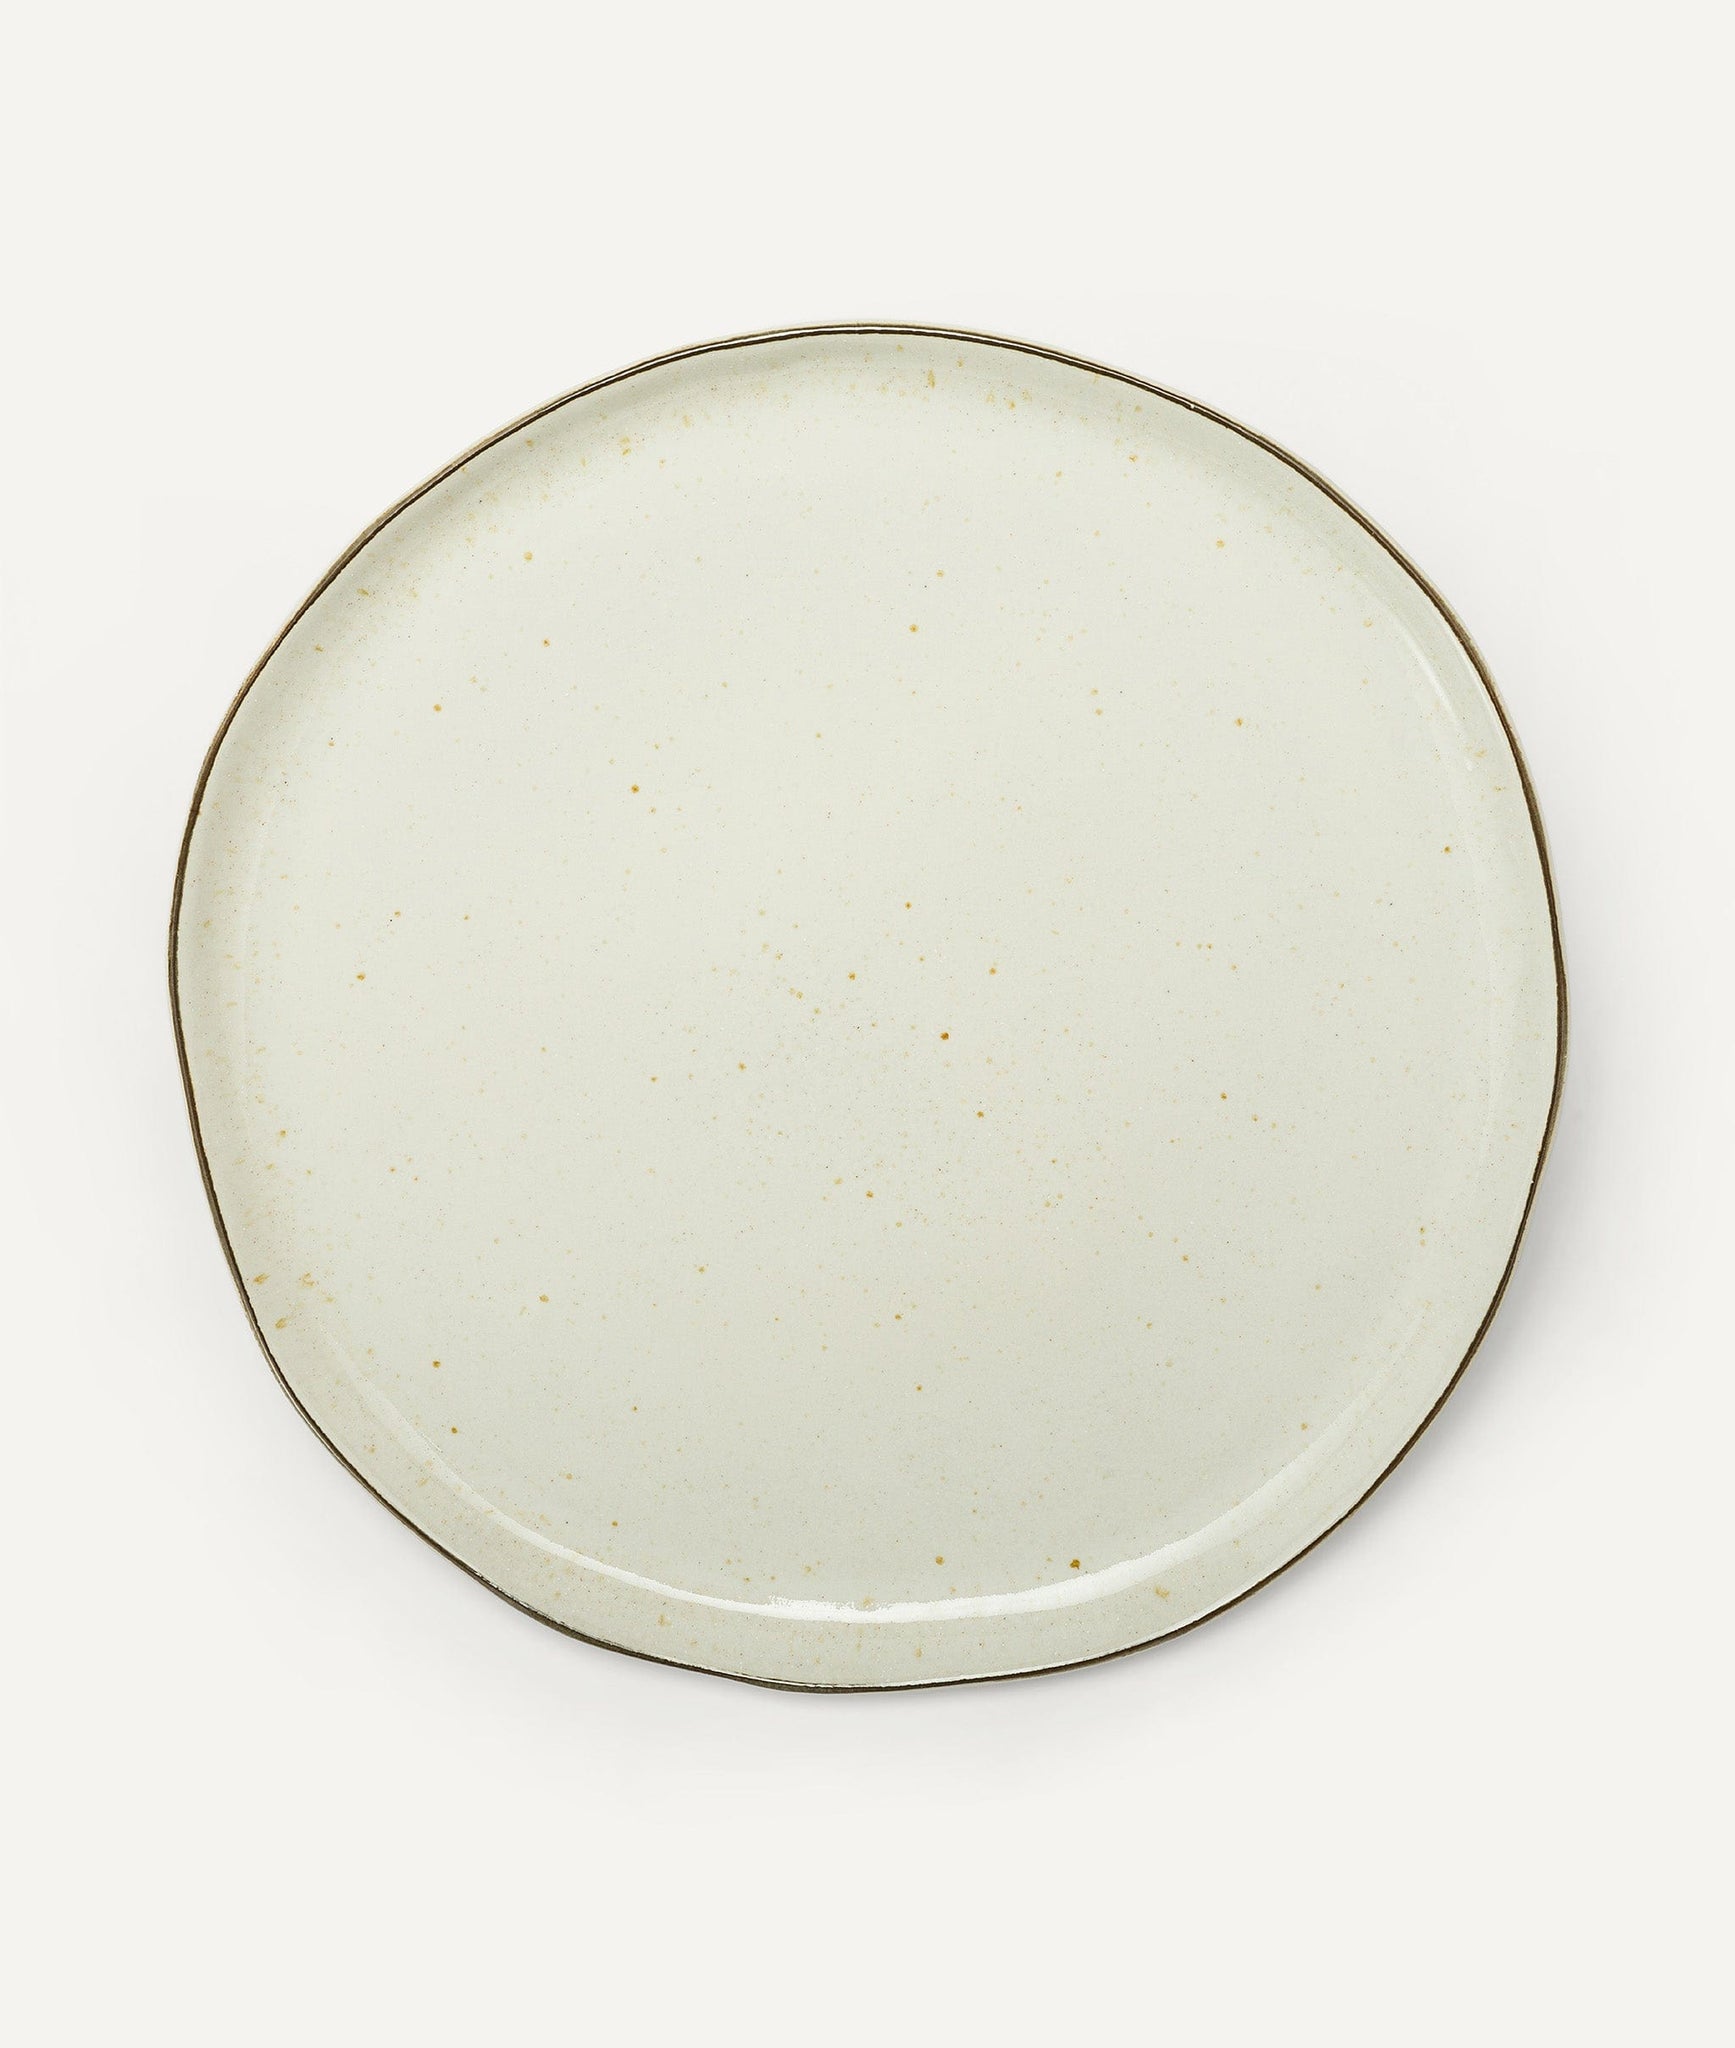 Dinner Plate in Ceramic